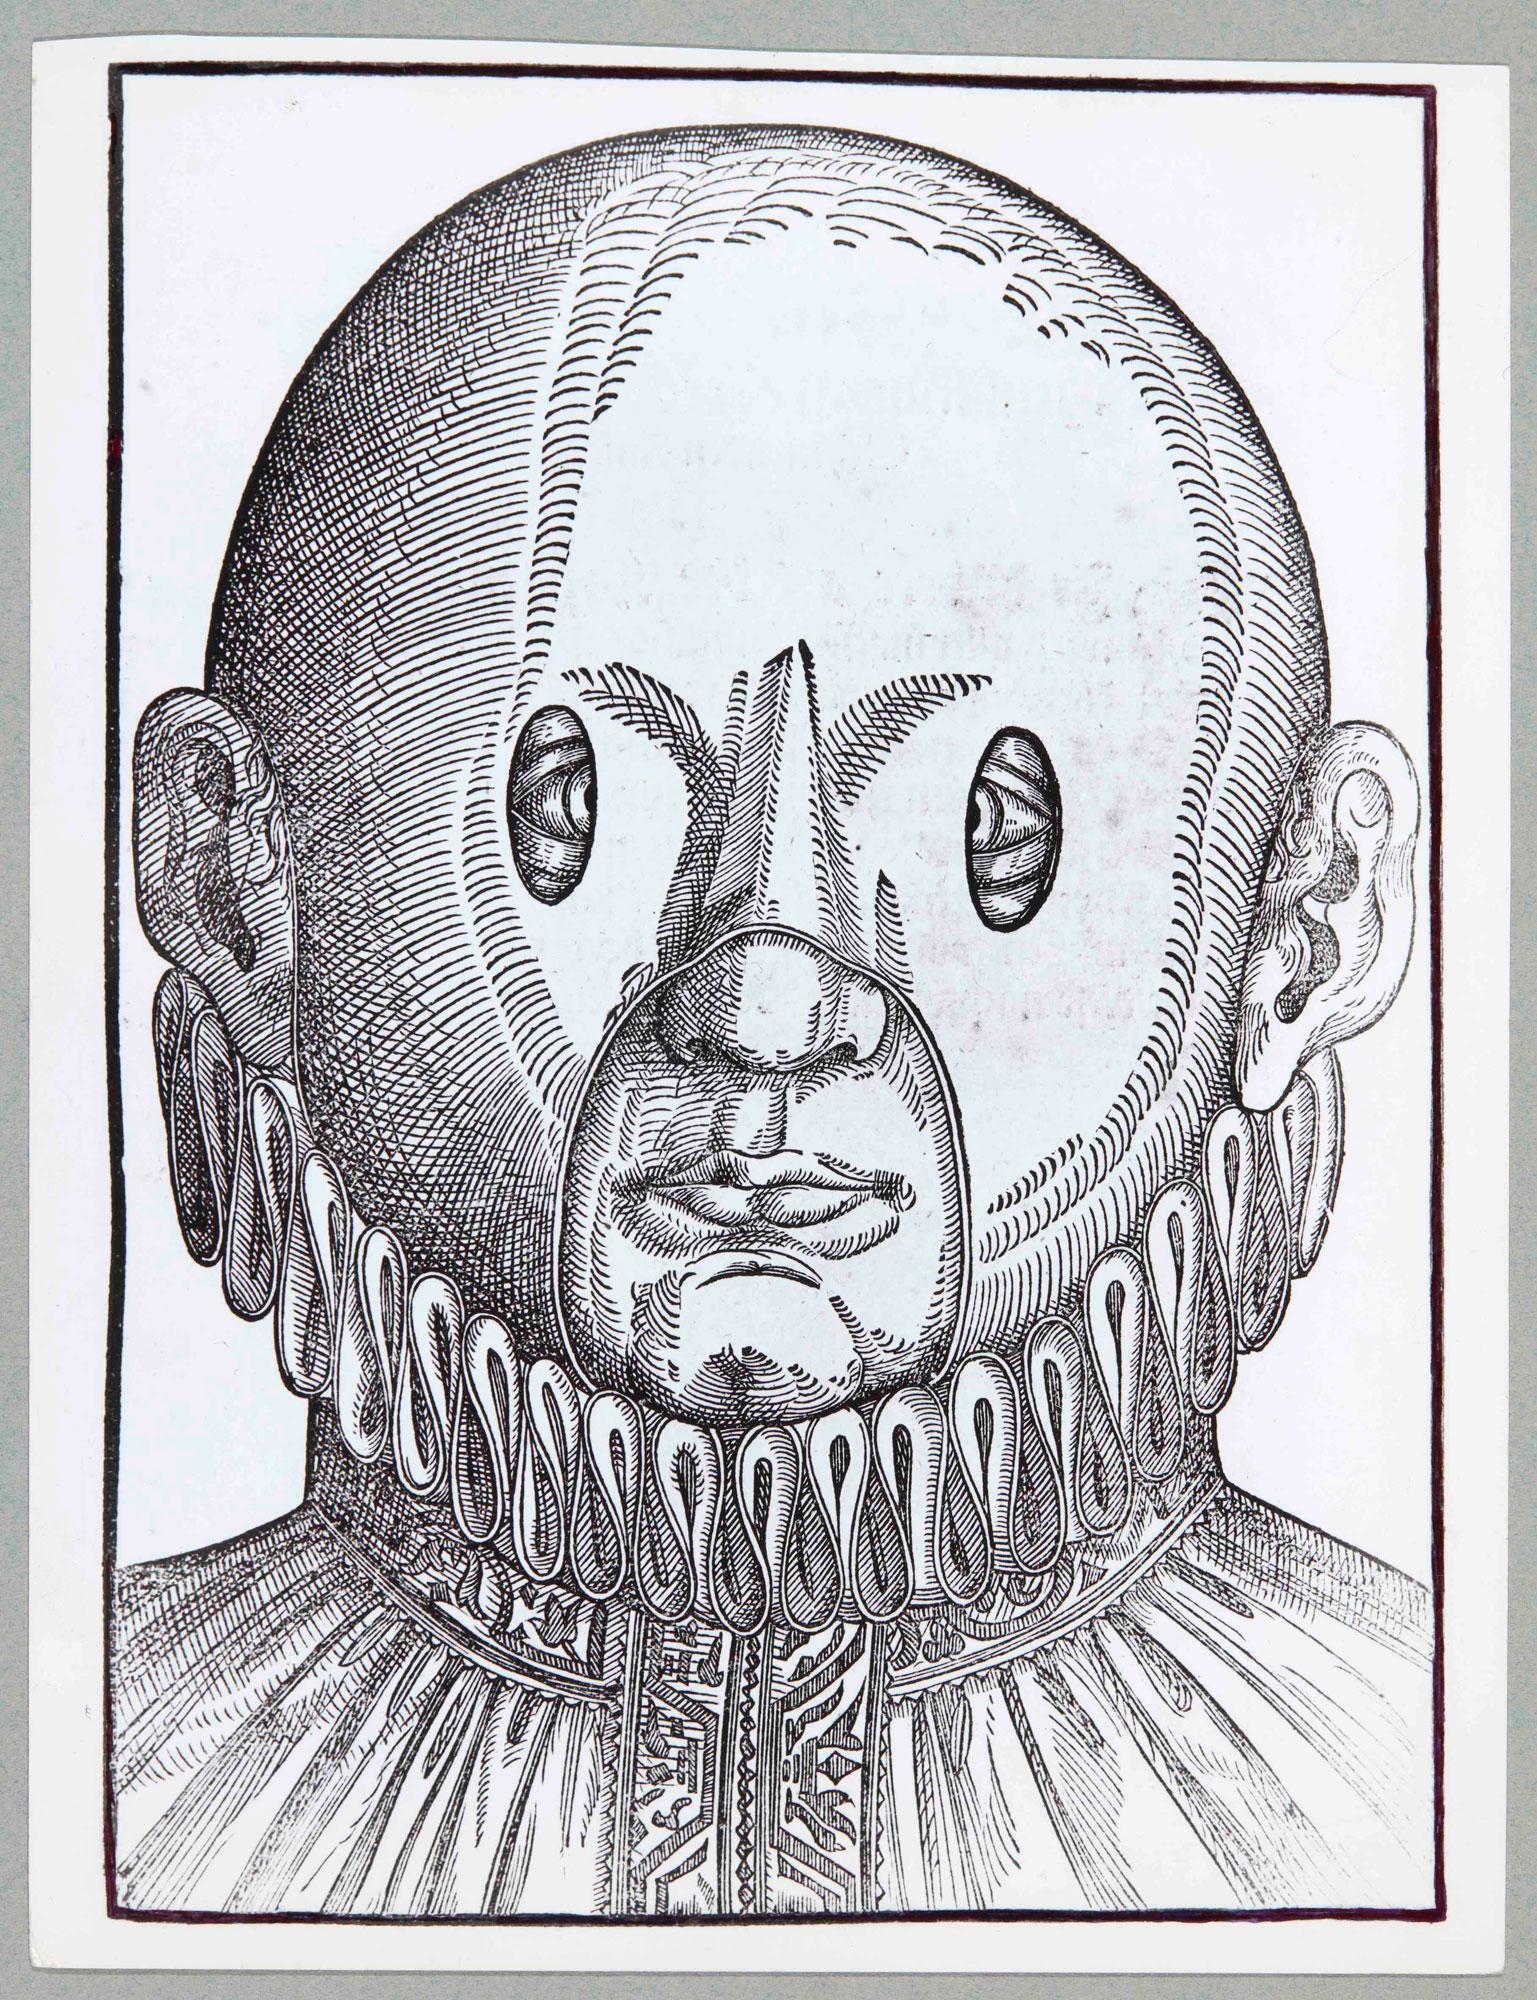 Nicolas Bouvier, reproduction de "Masque pour strabisme convergent chez l'enfant", gravure tirée de l’Ophthalmodouleia, das ist Augendienst de Georg Bartisch (1583), vers 1961-1962. [DR]